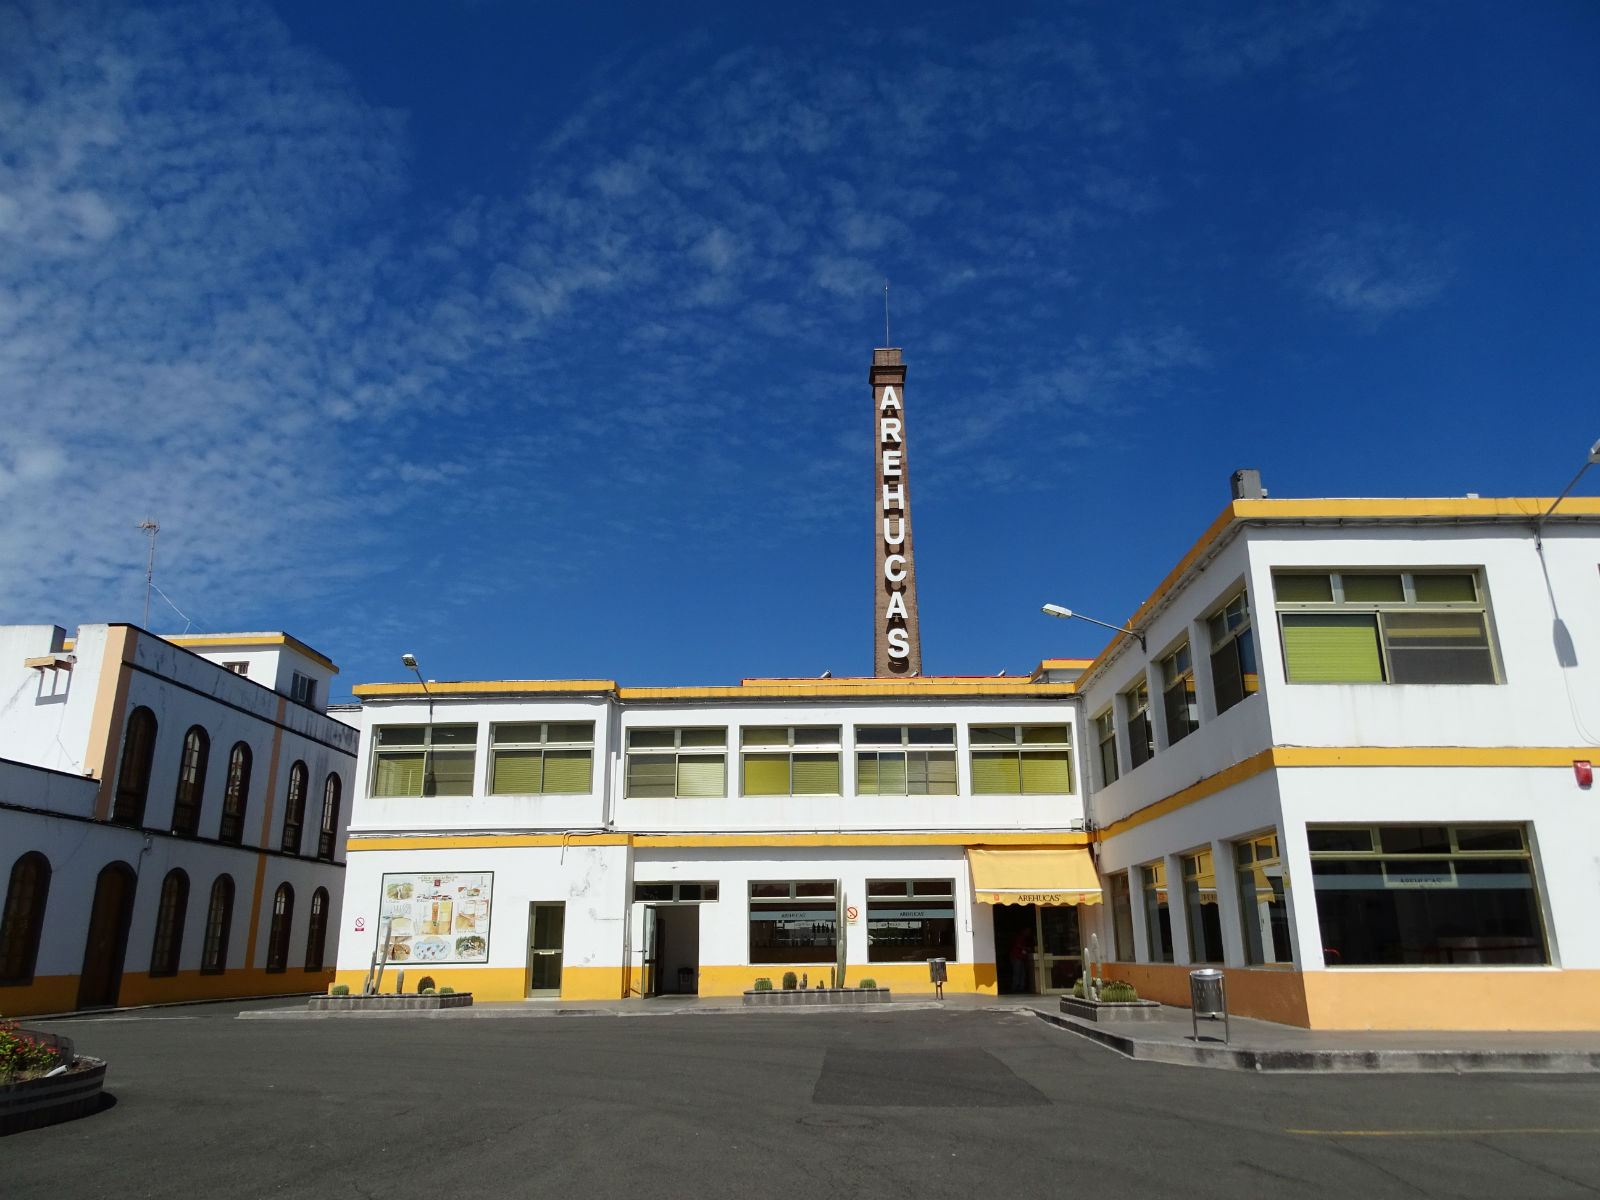 Arehucas Rumfabrik